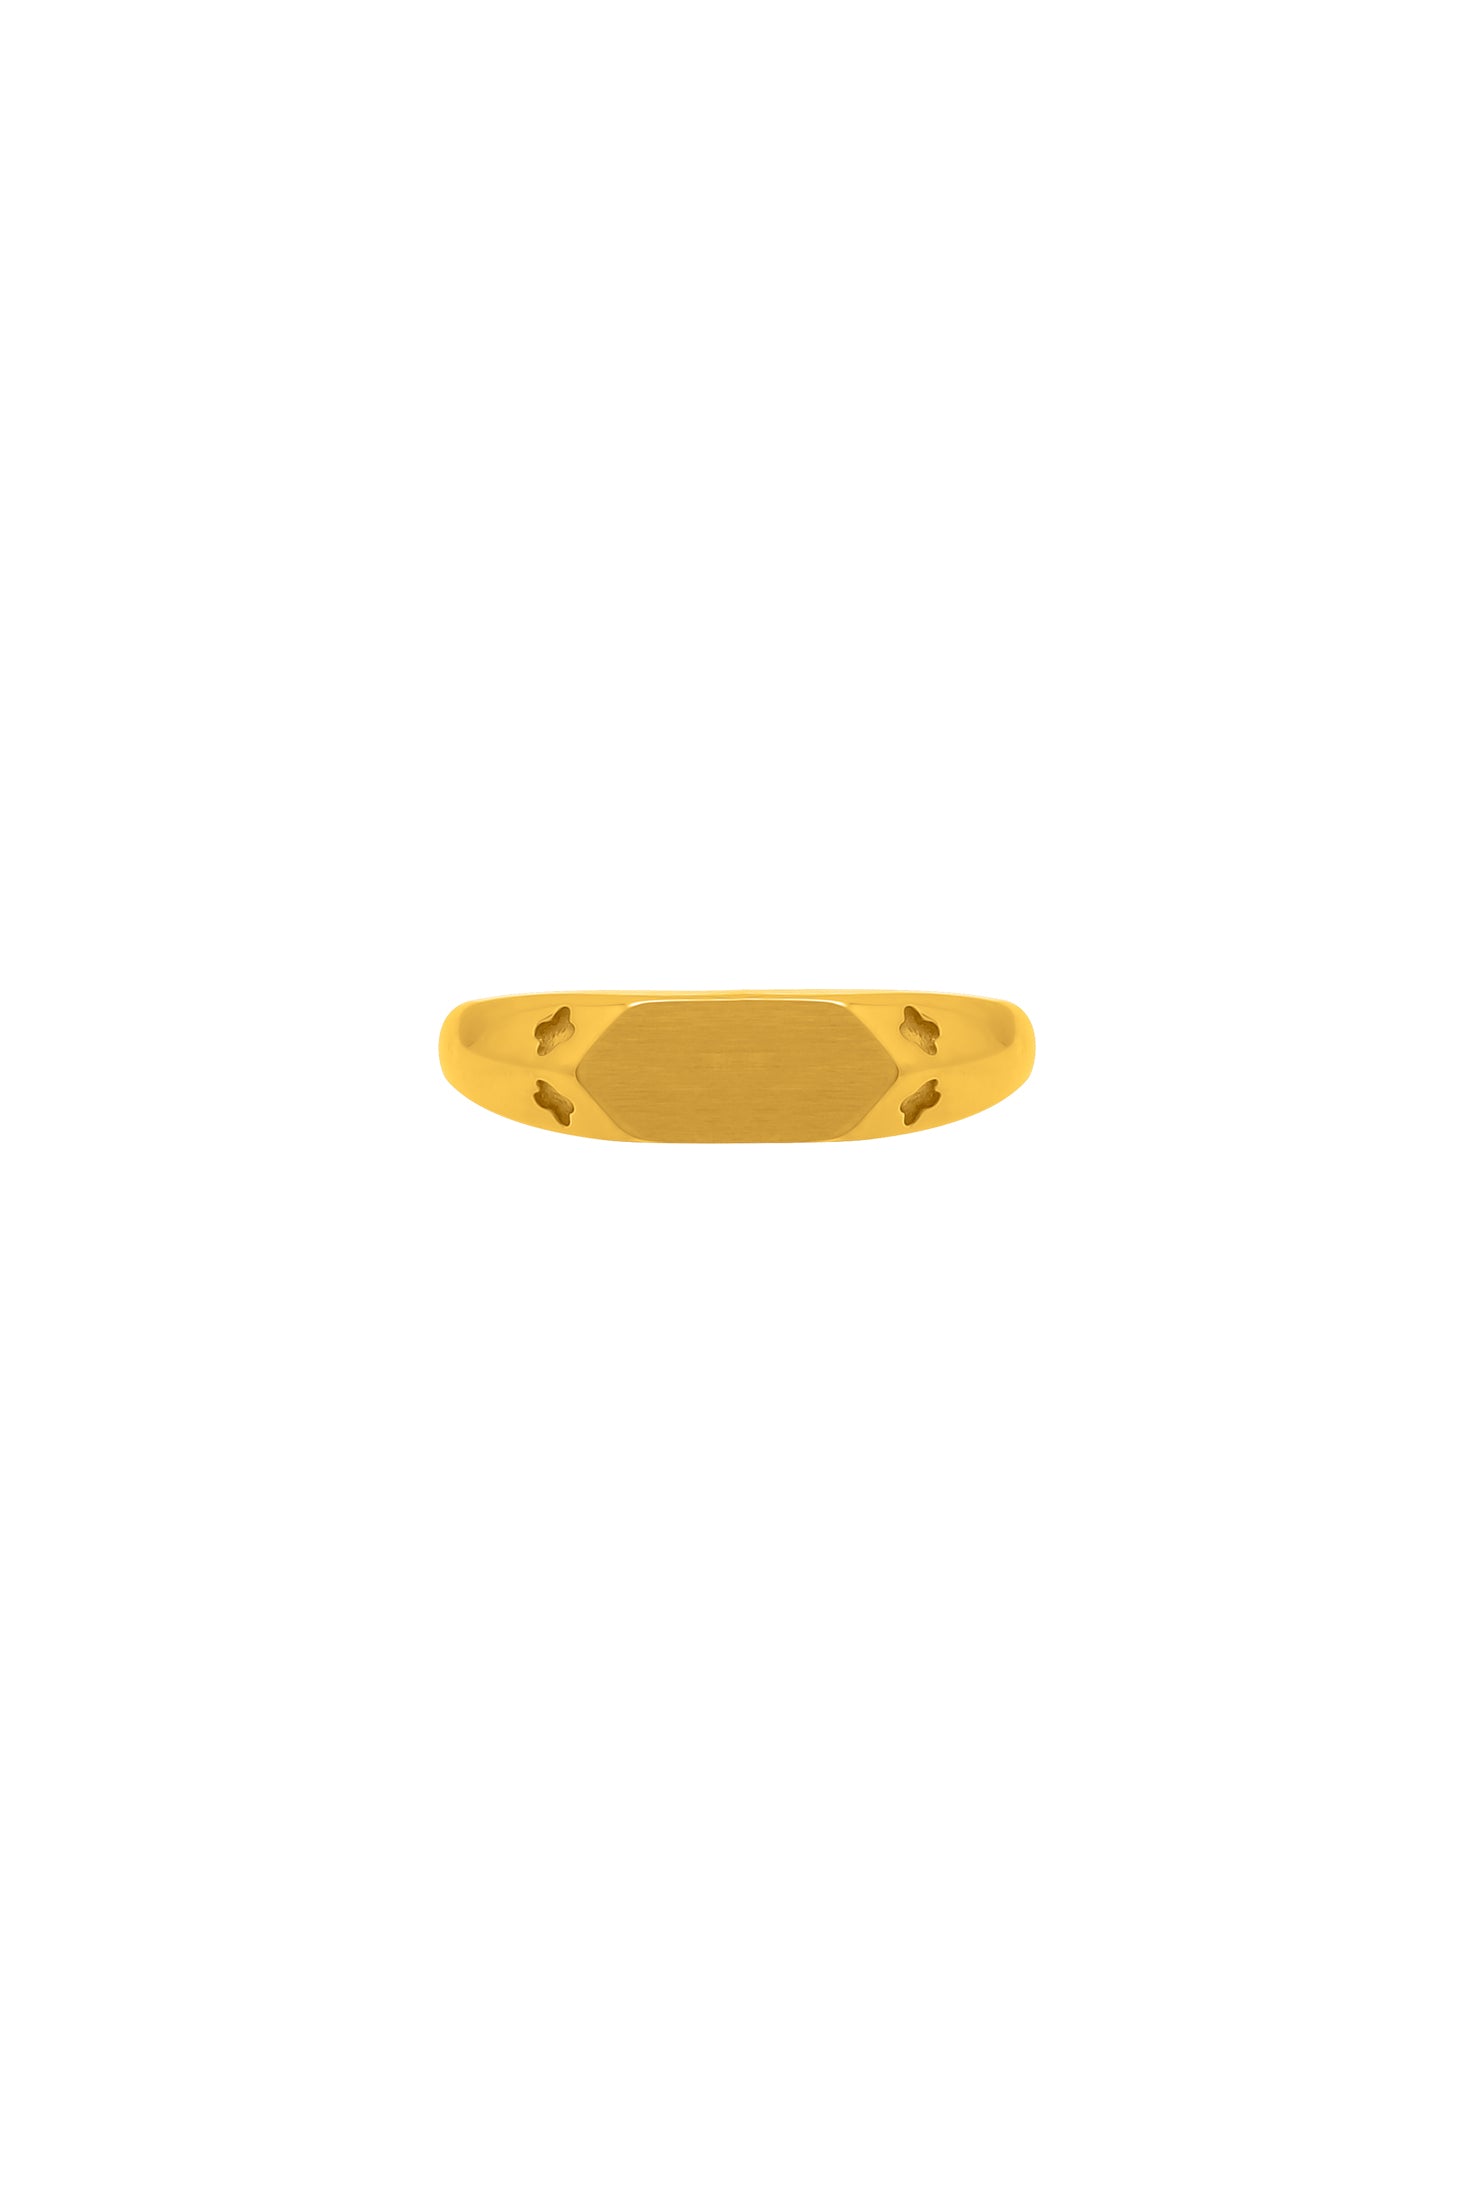 Protezzjoni Promise Ring